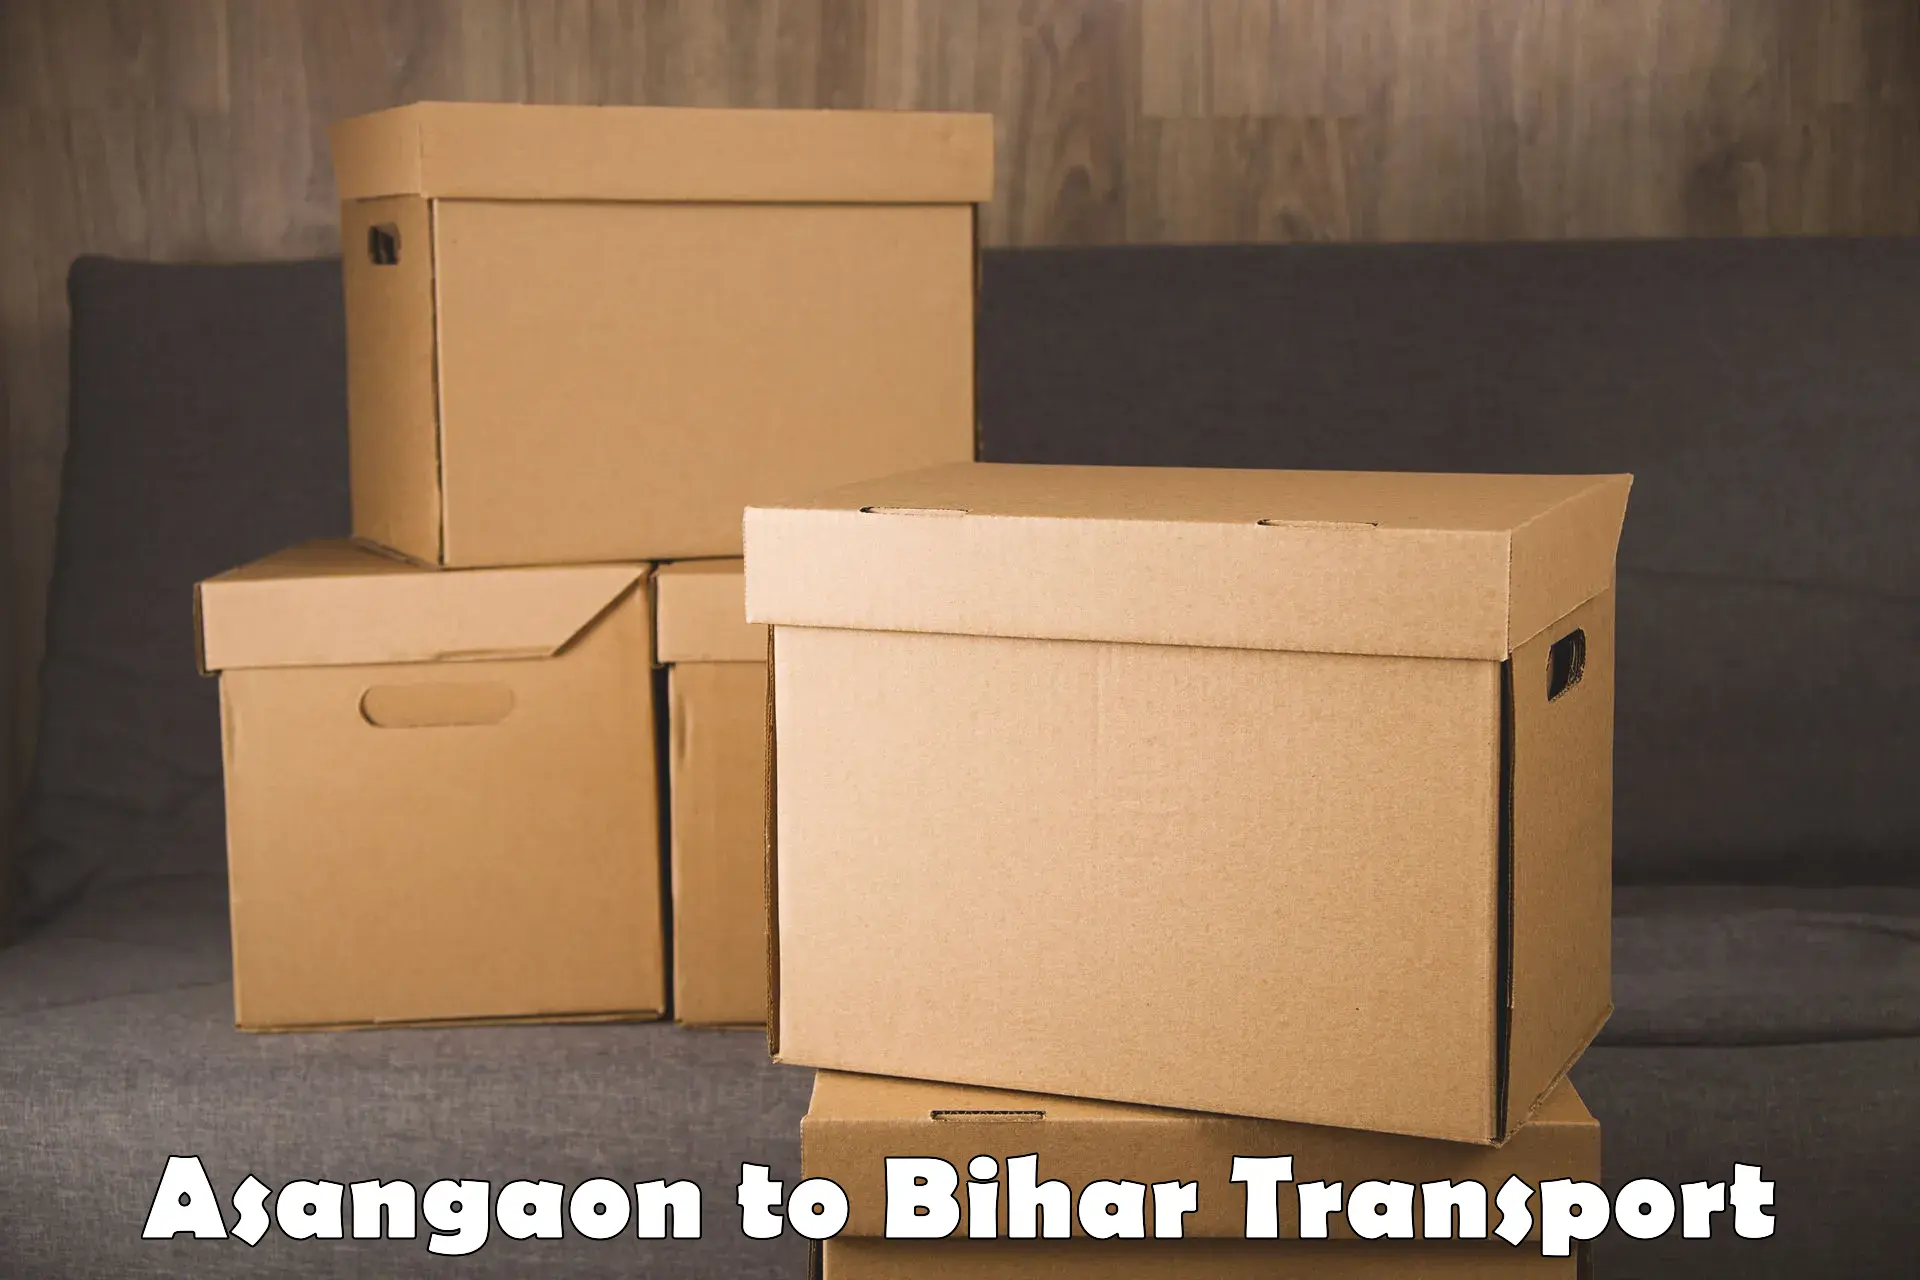 Container transport service Asangaon to Bihar